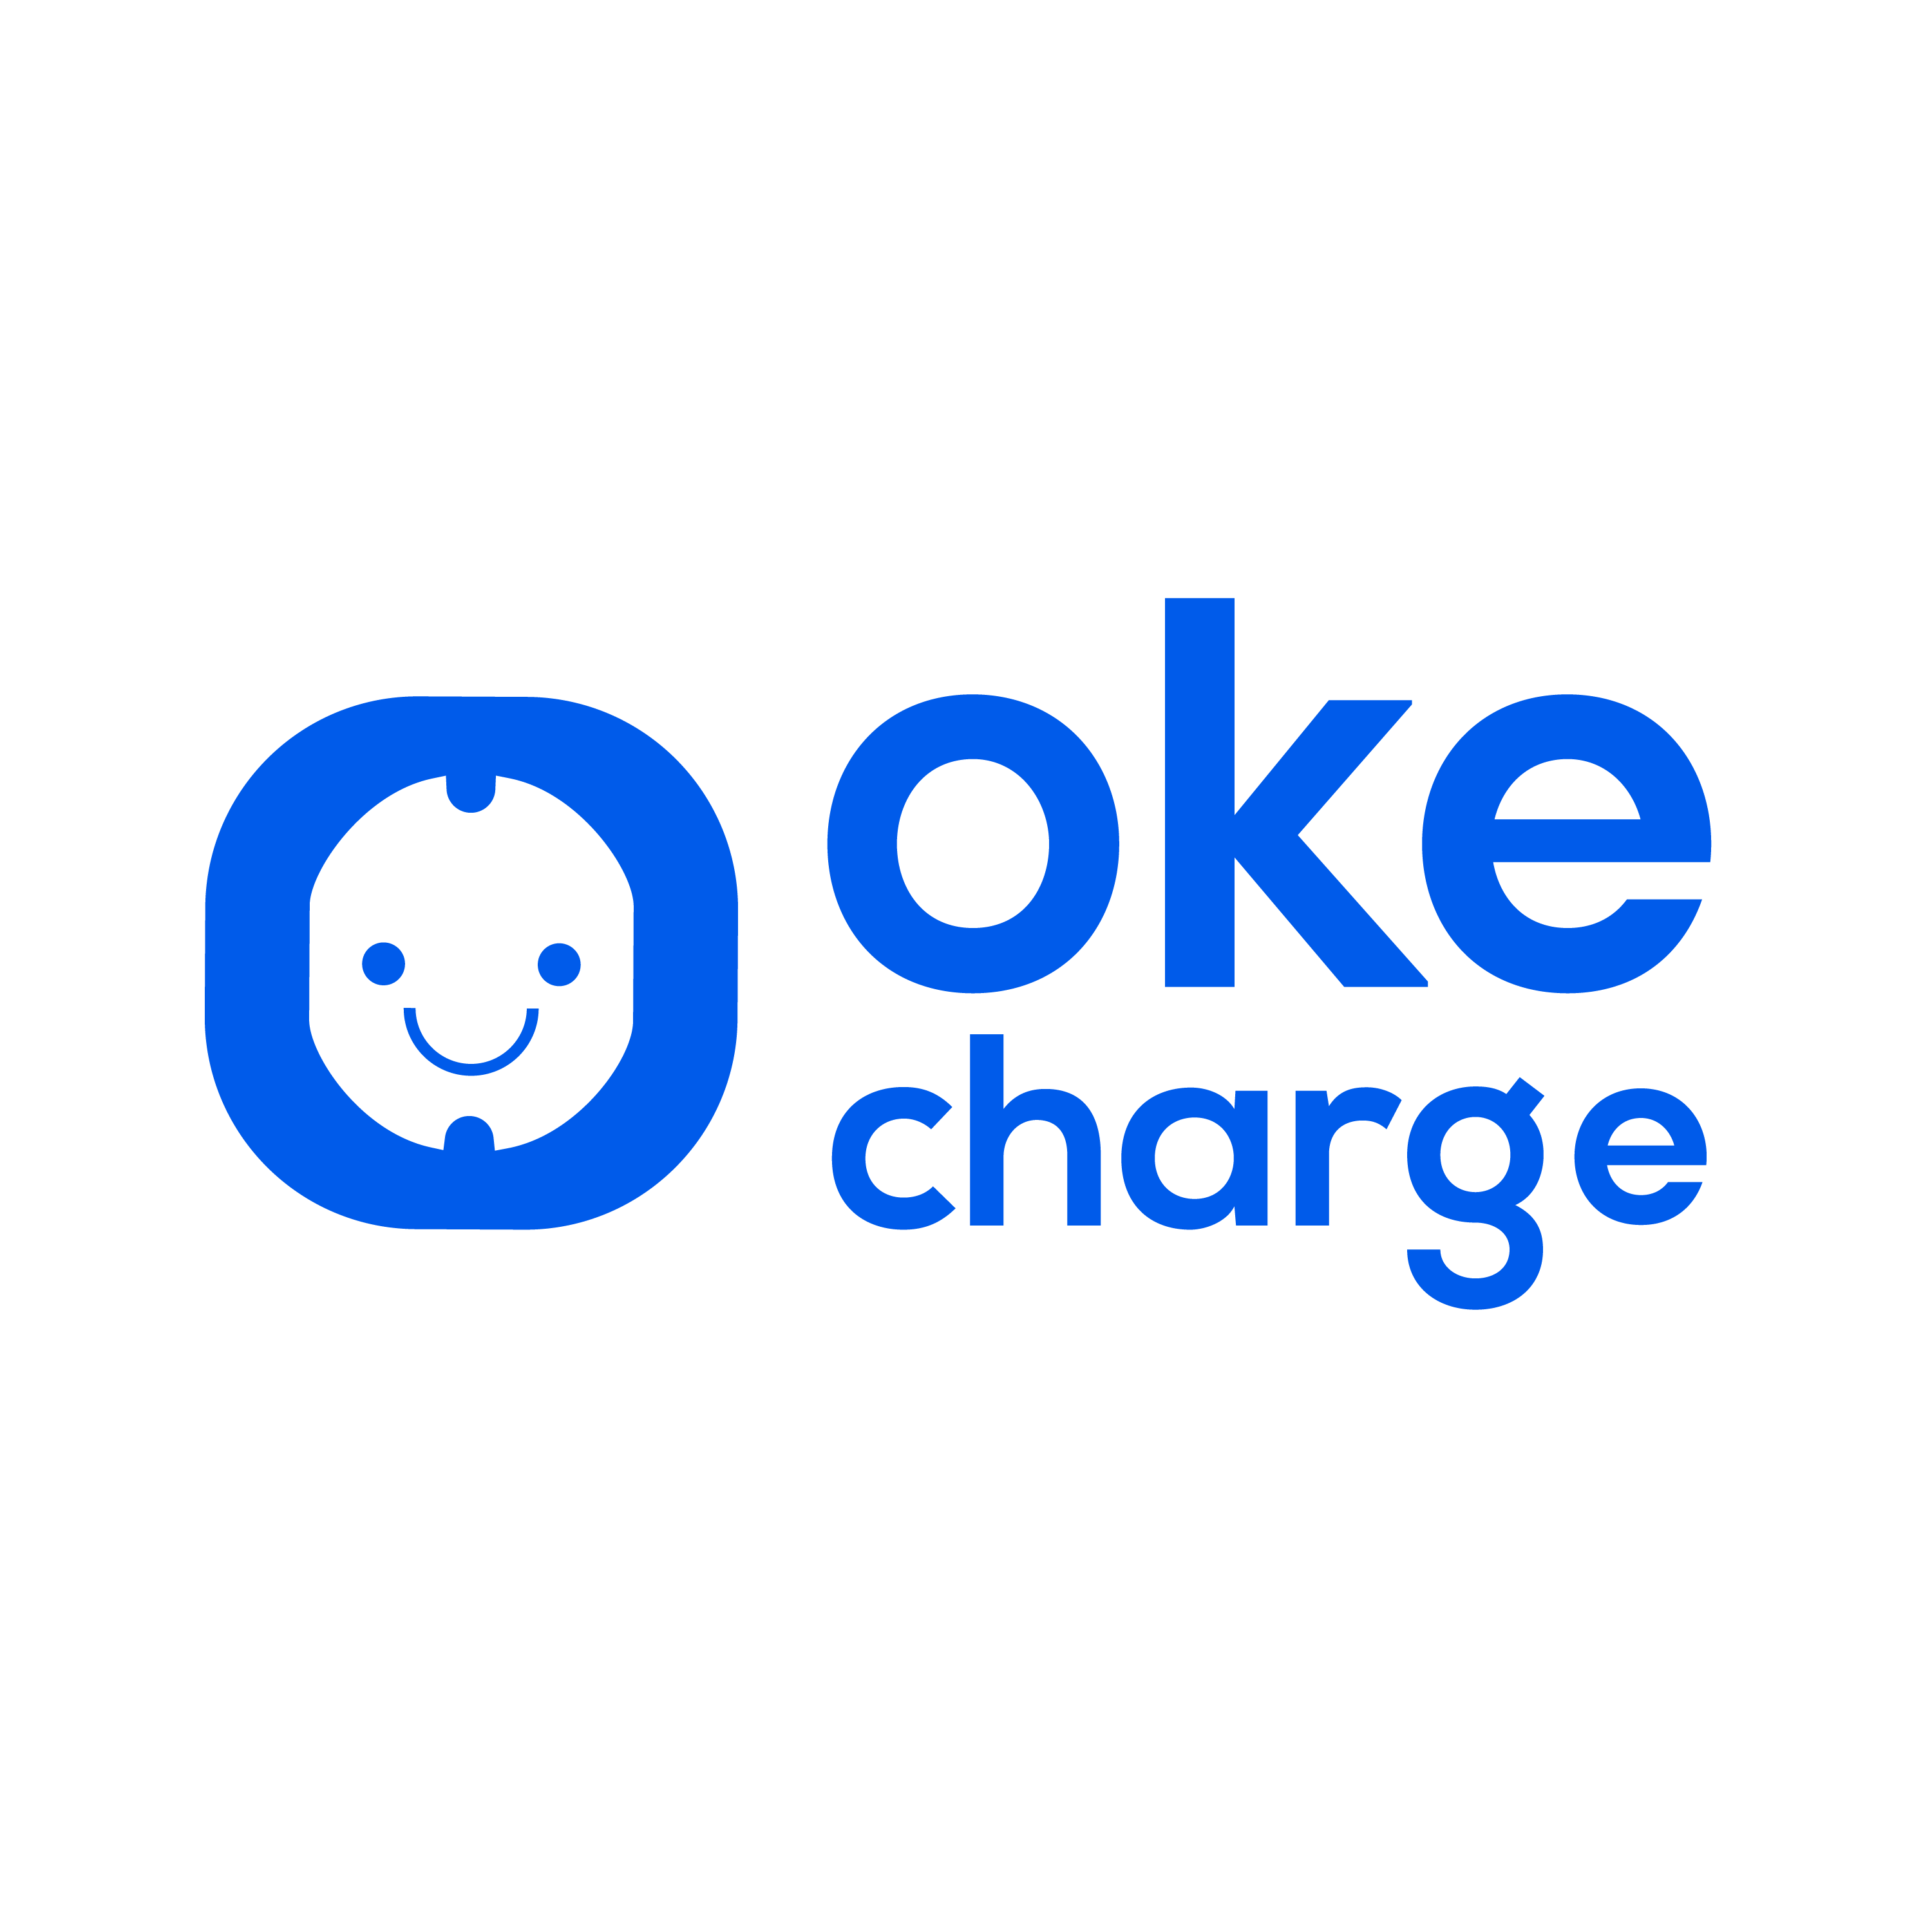 Oke Charge